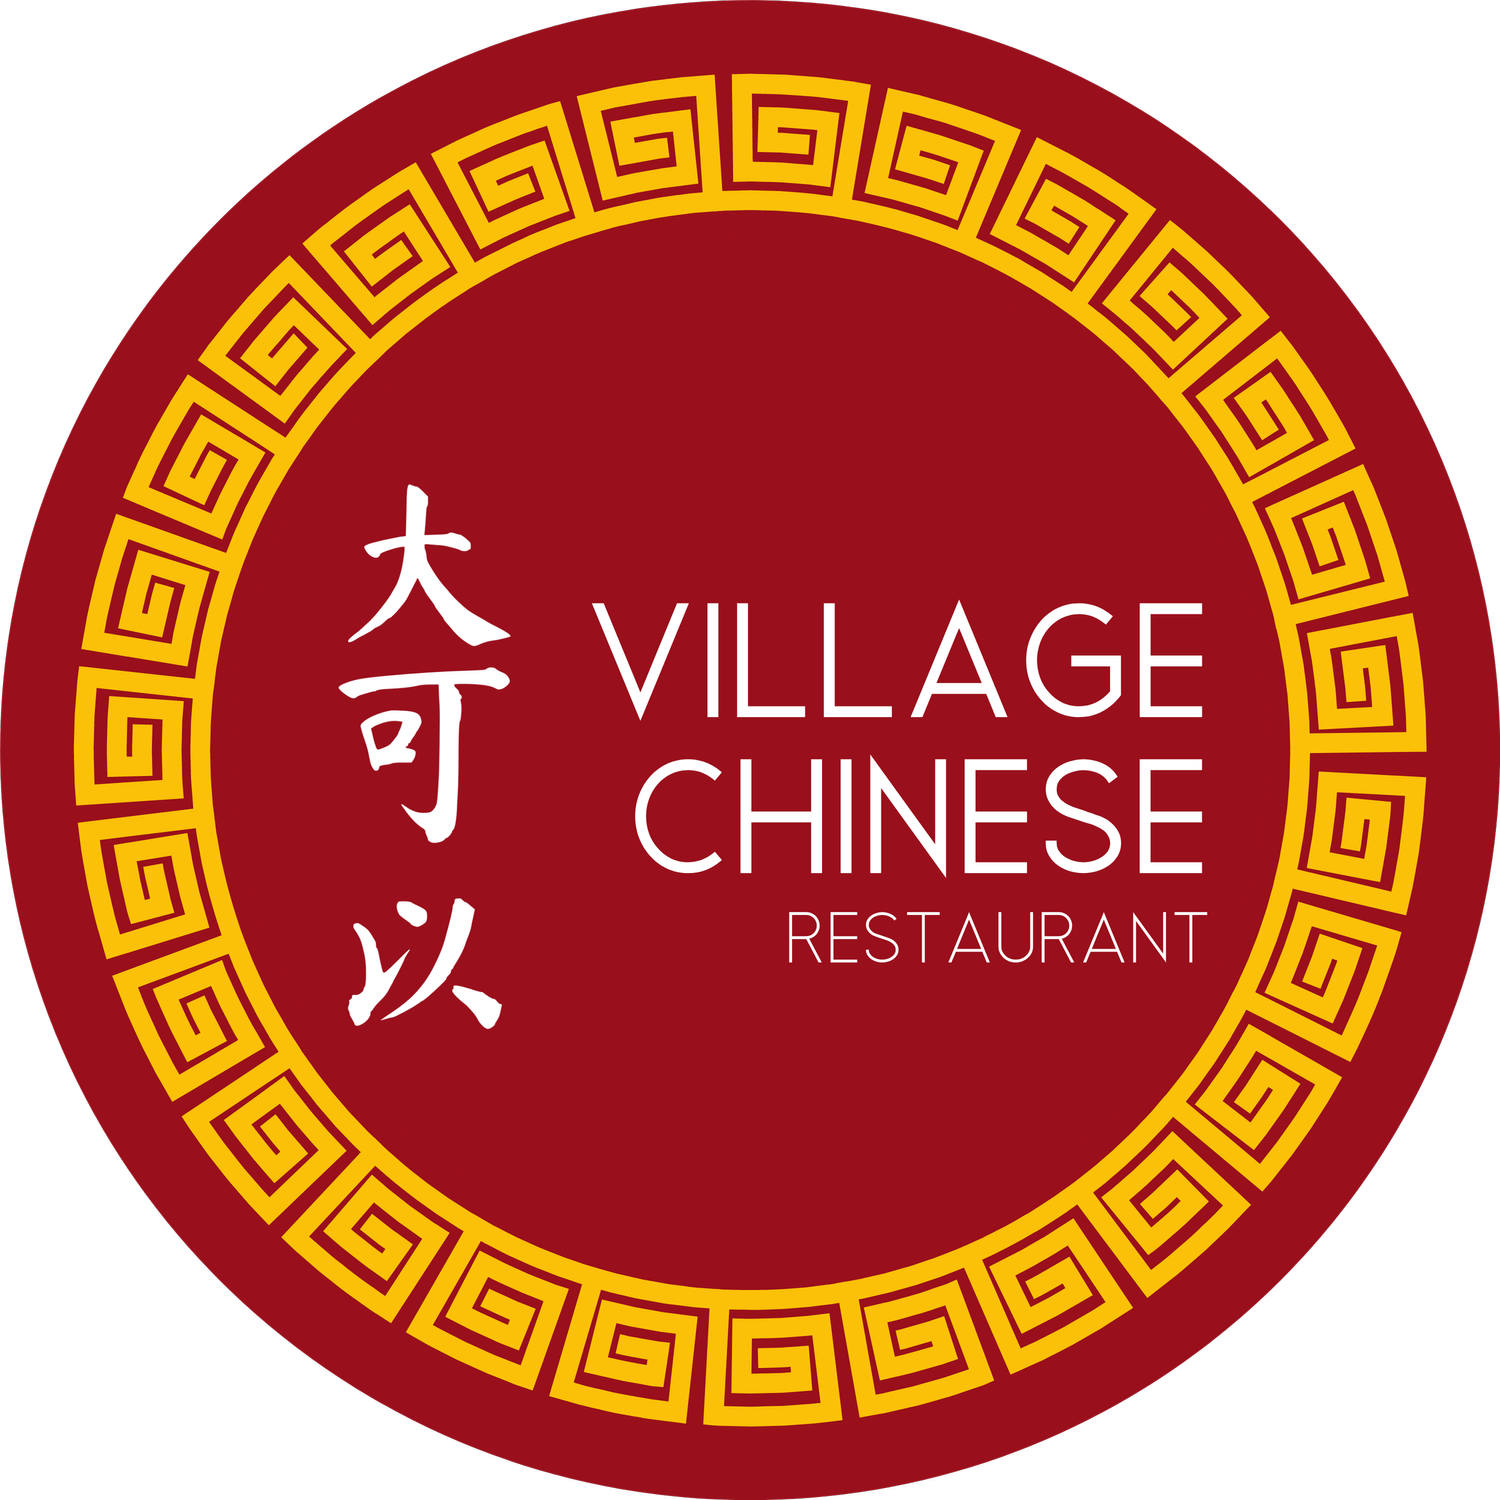 Village Chinese Restaurant